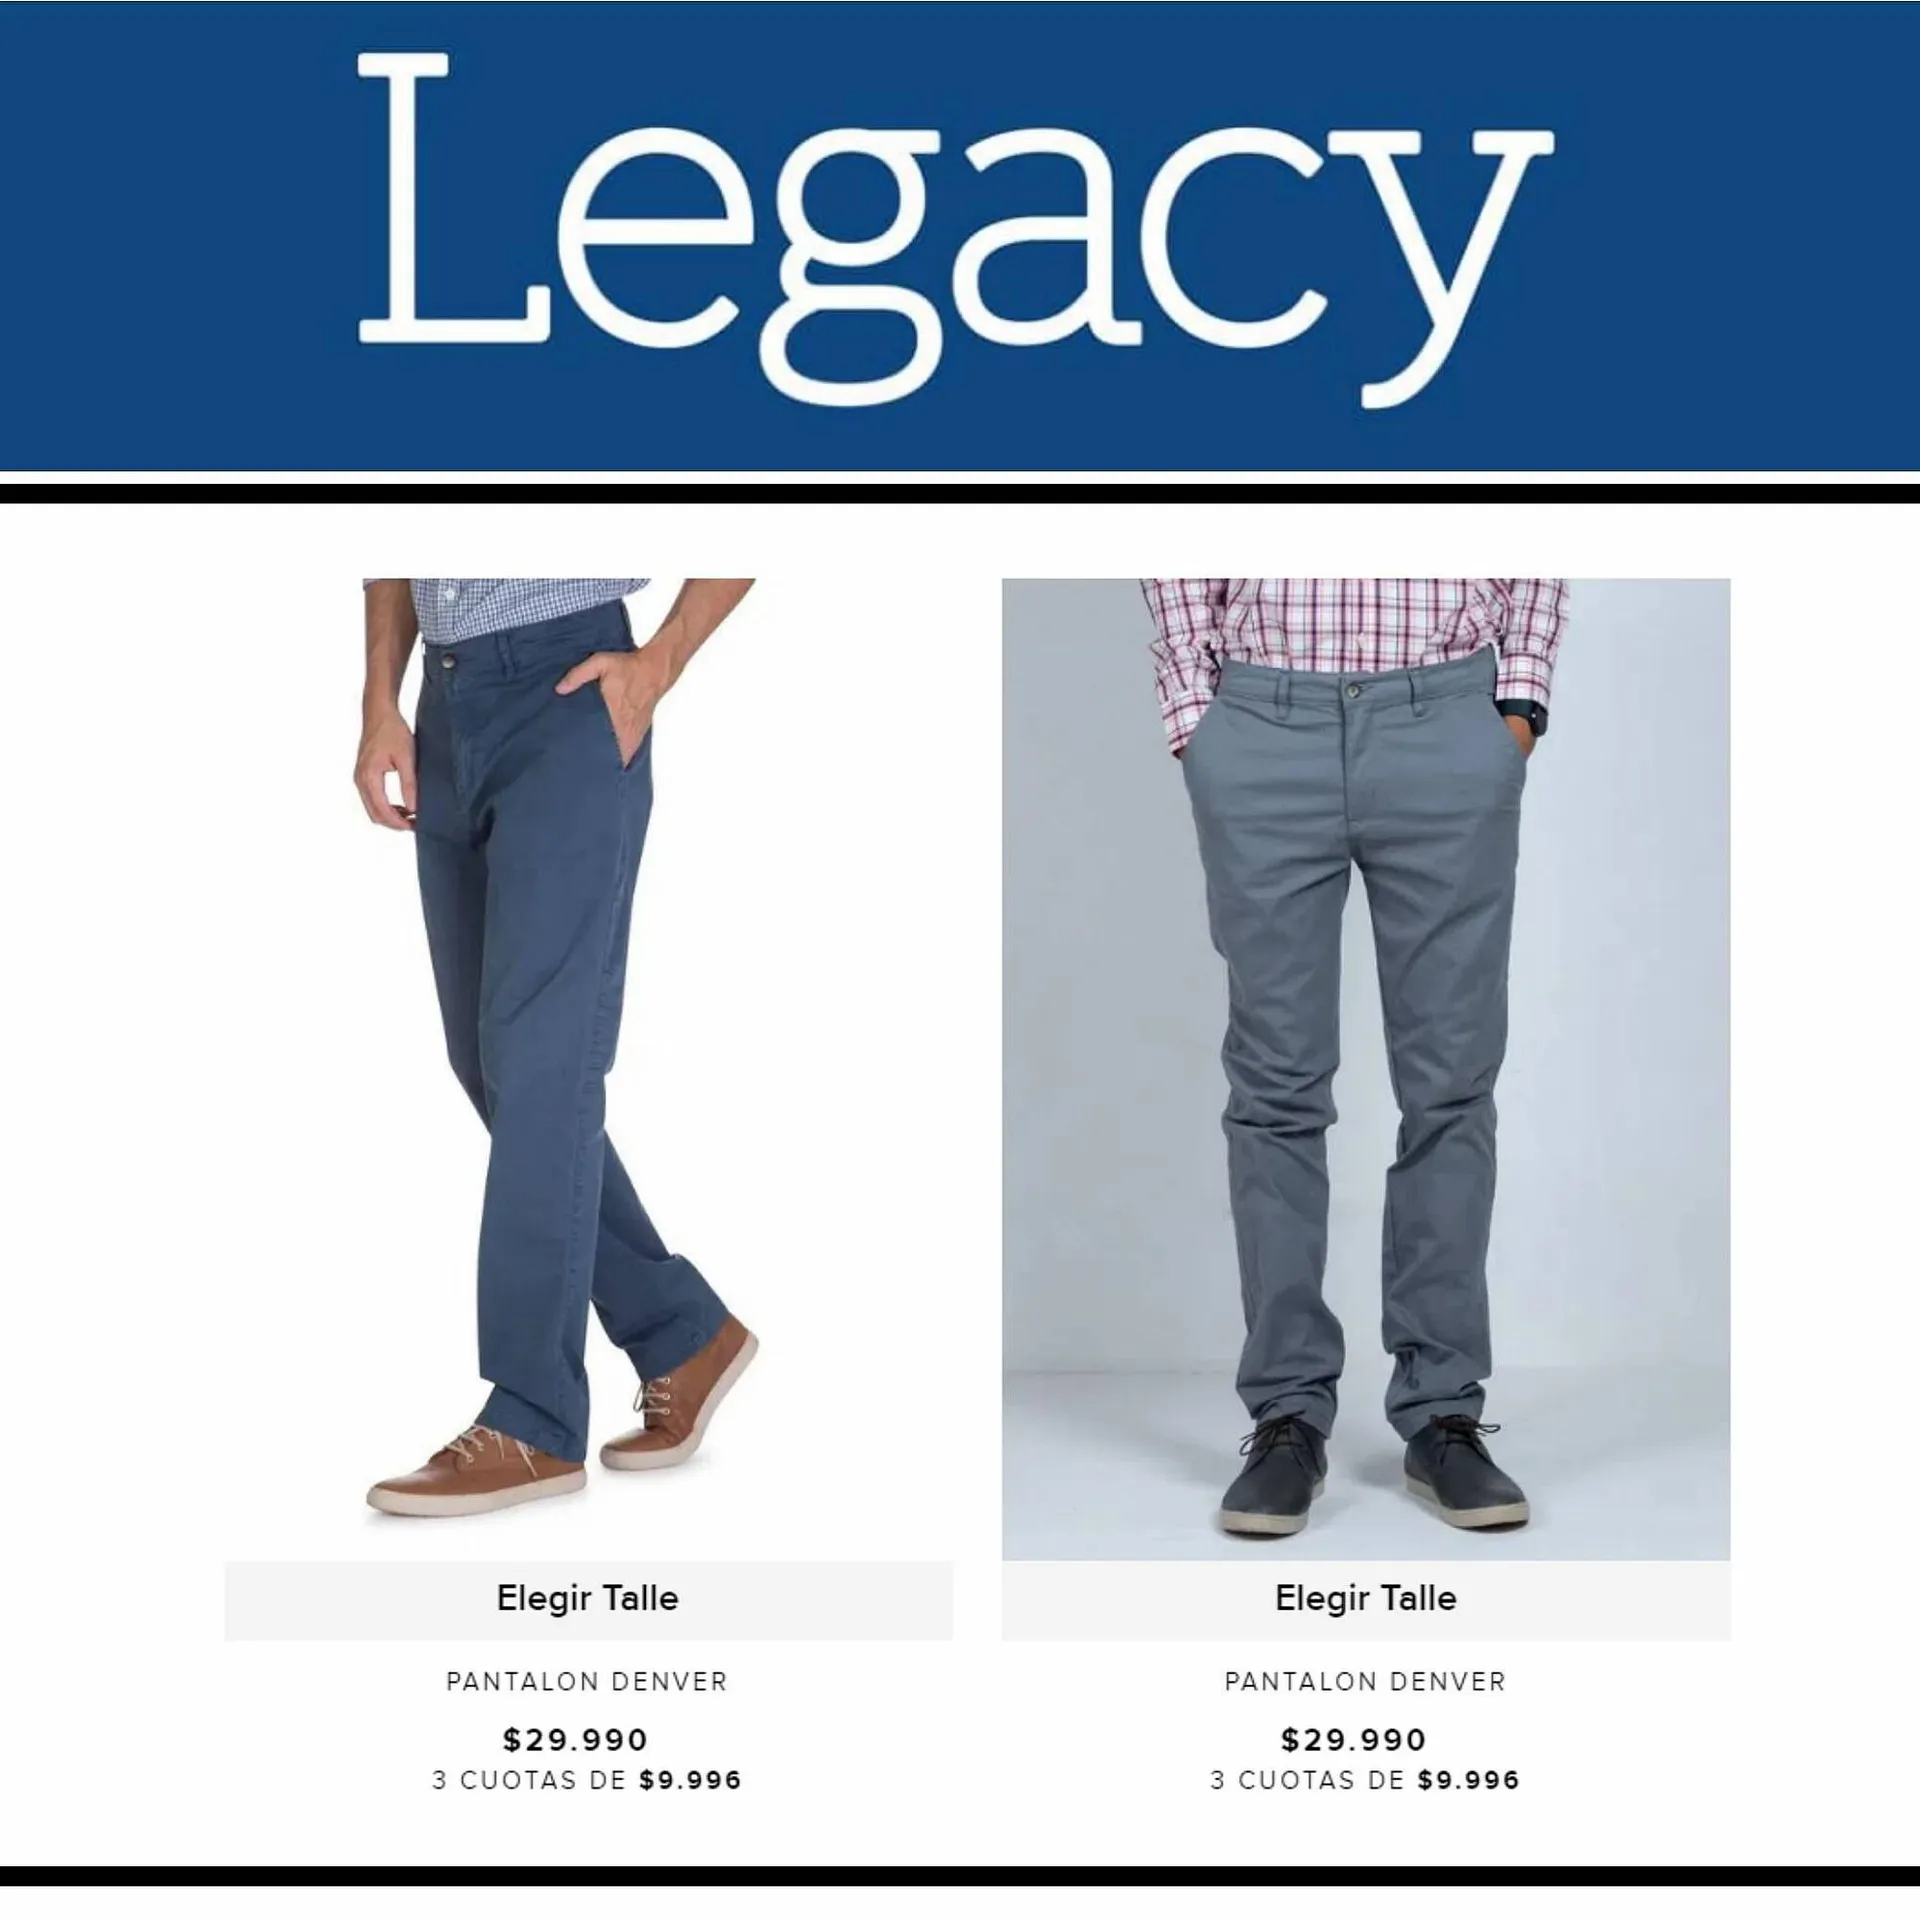 Catálogo Legacy - 2